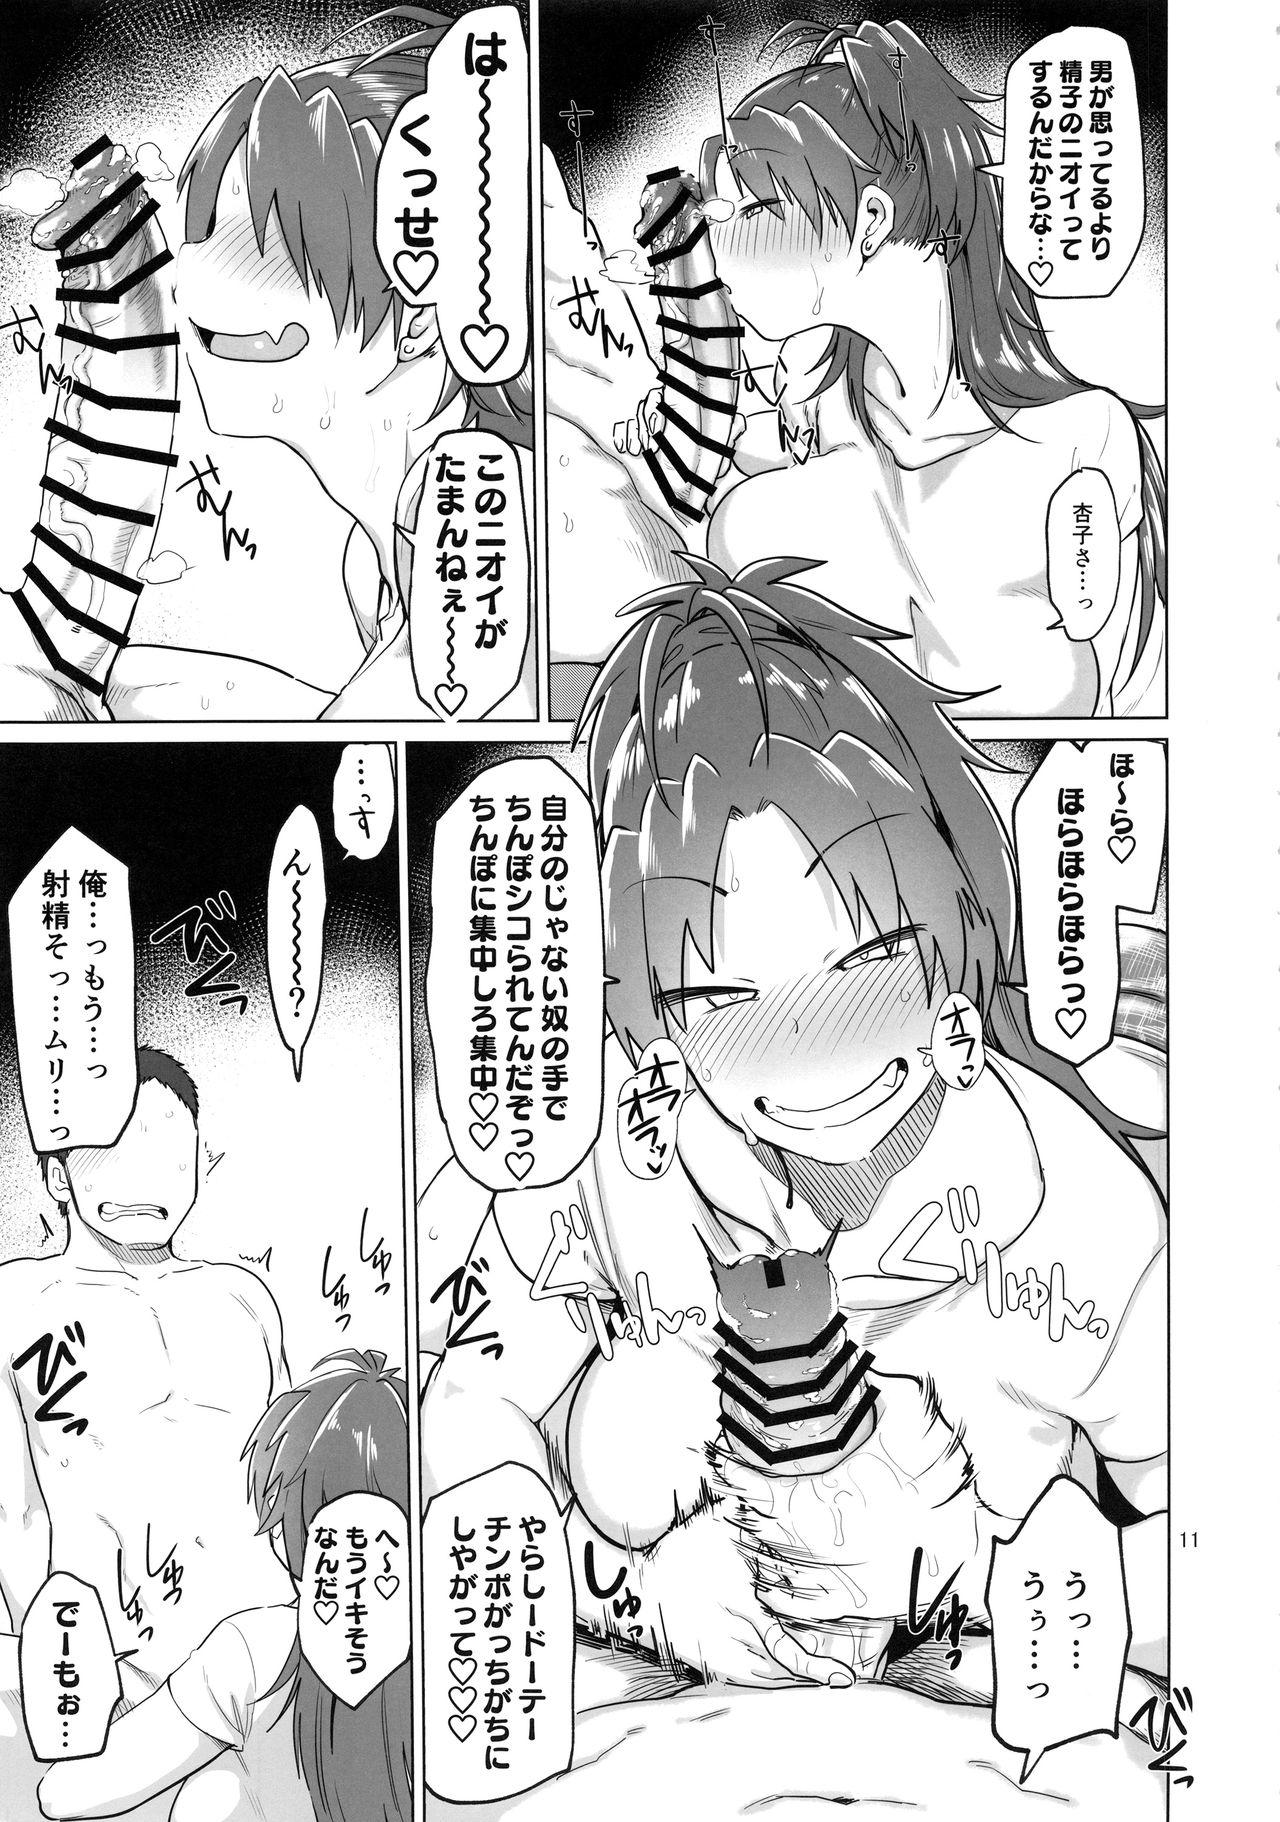 Jerking Otonari no... Moto Sakura-san - Puella magi madoka magica Stepfather - Page 11